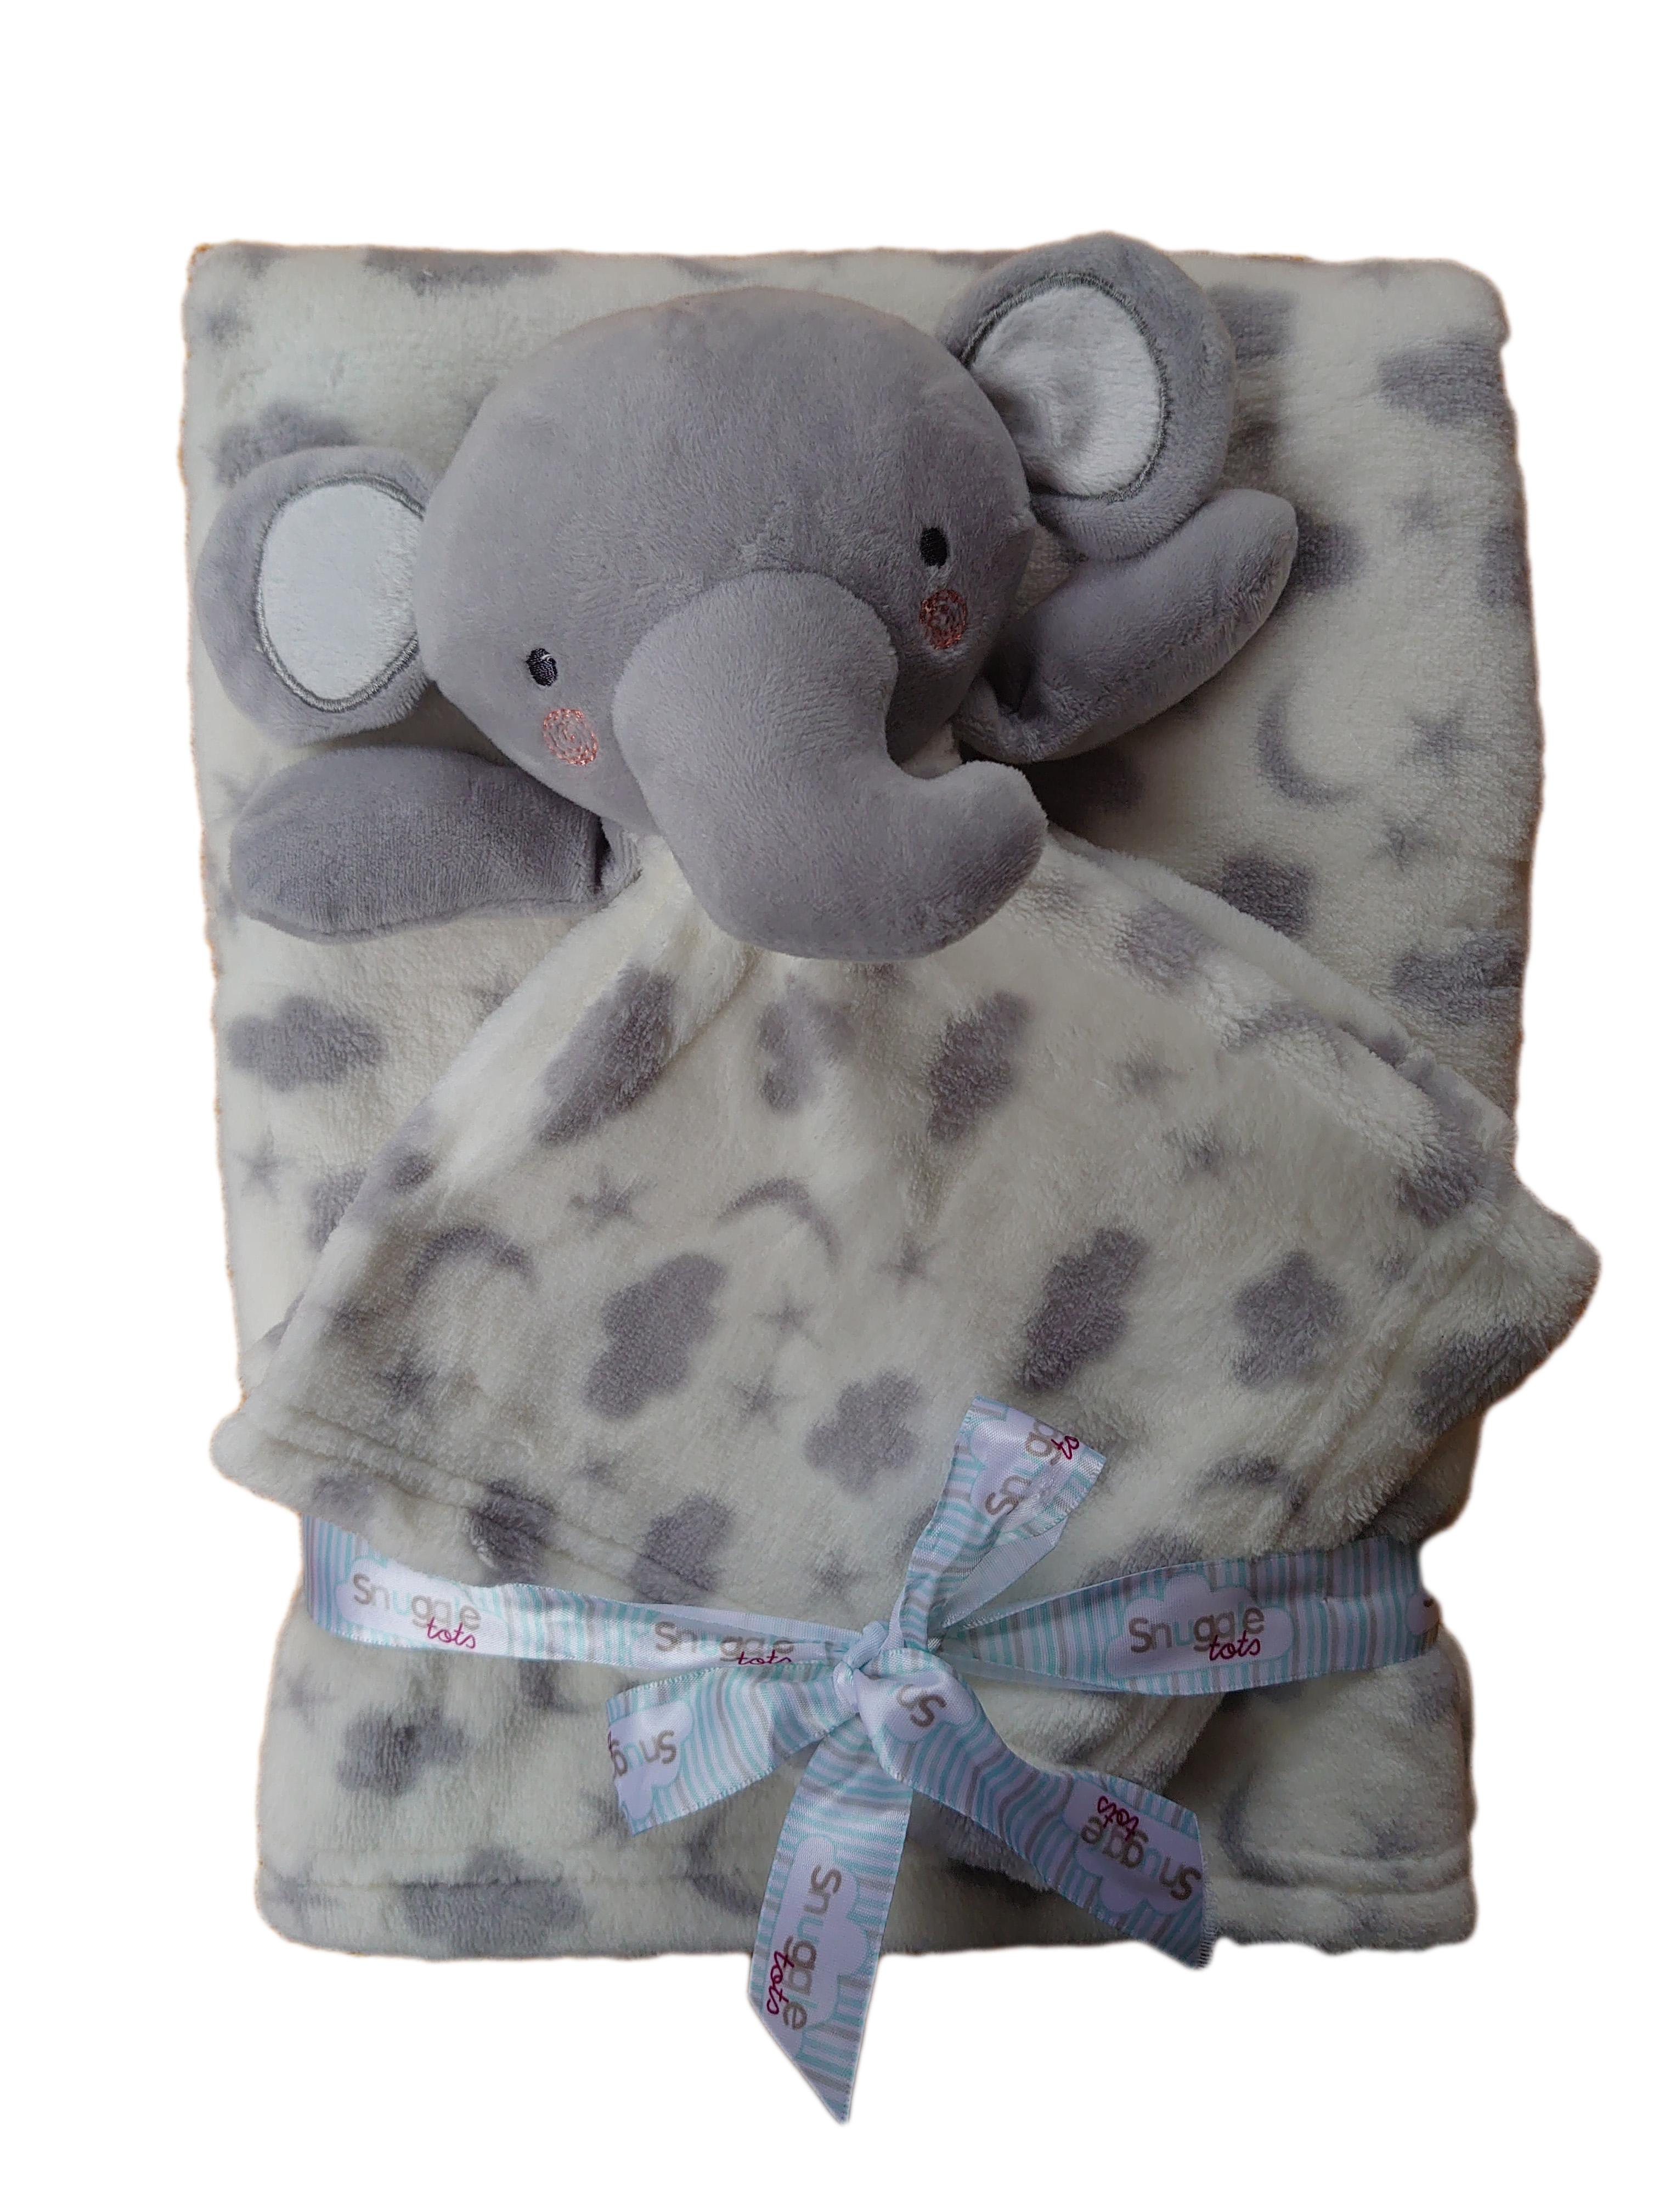 Babydecke mit Namen & Datum bestickt + Kuscheltuch Teddy Hase Maus Elefant  Geschenk Set Baby Taufe Geburt blau rosa weiß | Wuff Dogsworld